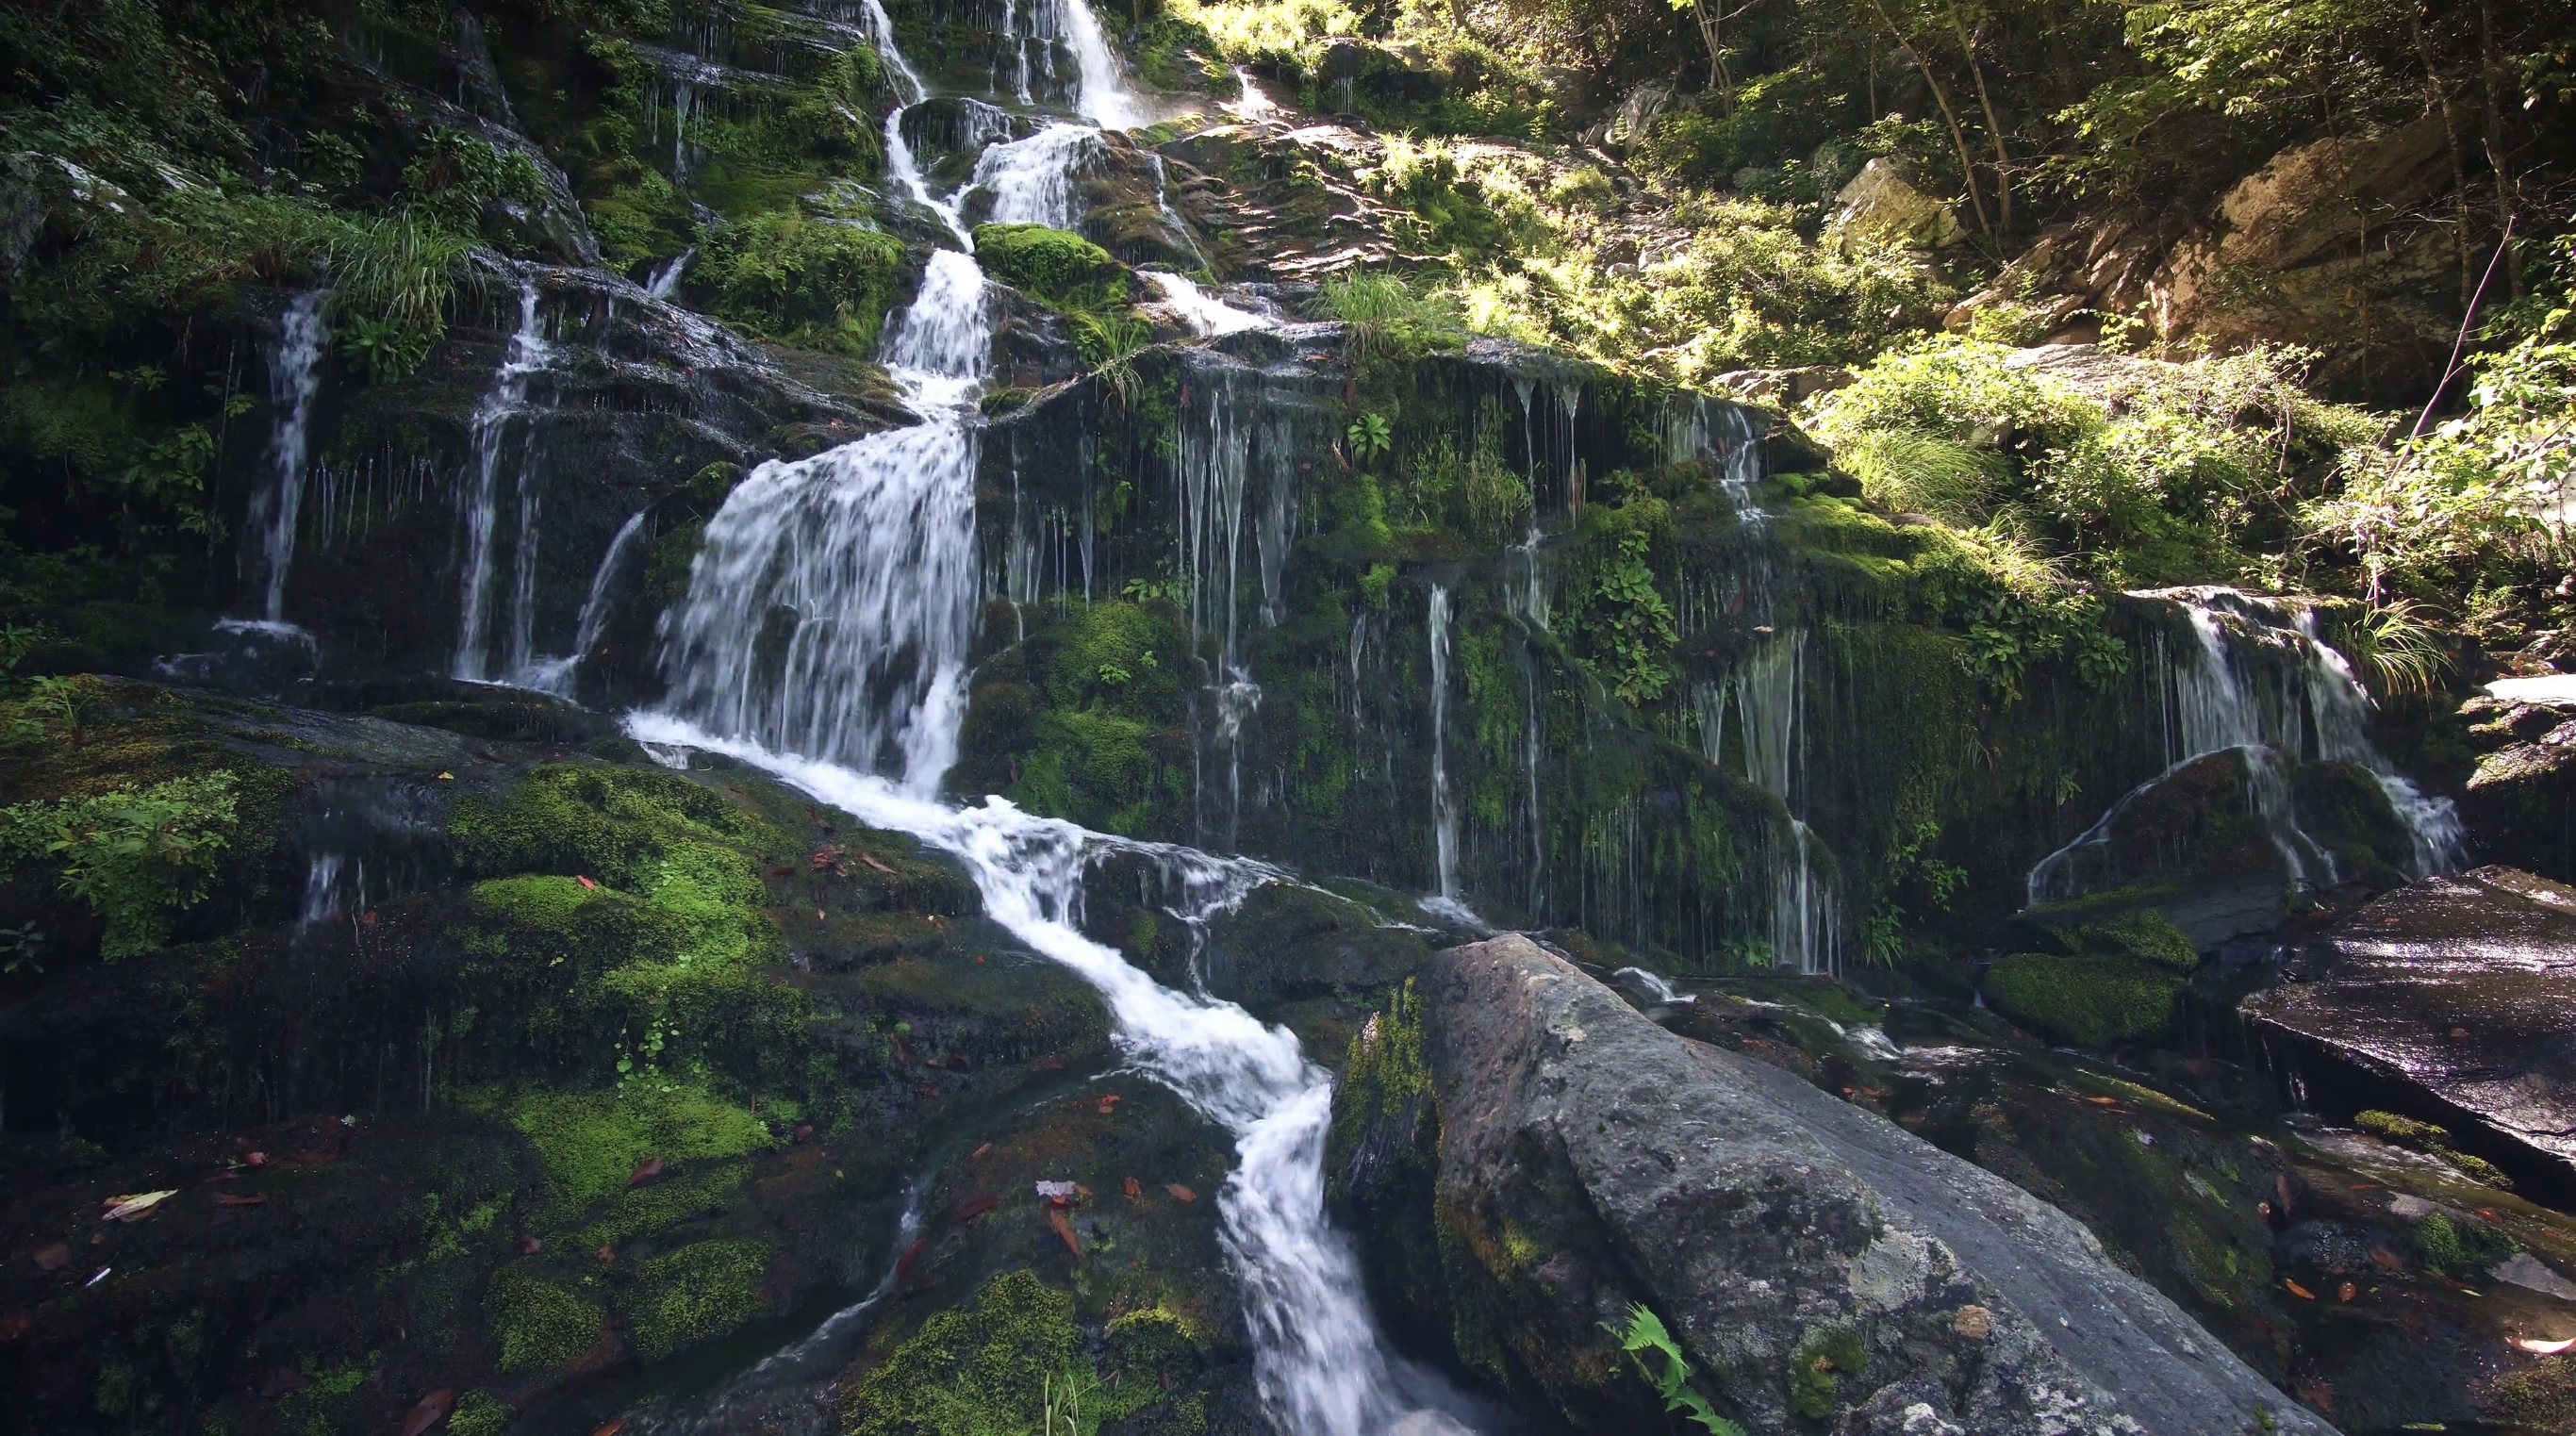 Ein großer Wasserfall der Energie, Kraft und den Fluss des 
                                                                                                                                  Lebens symbolisieren soll.